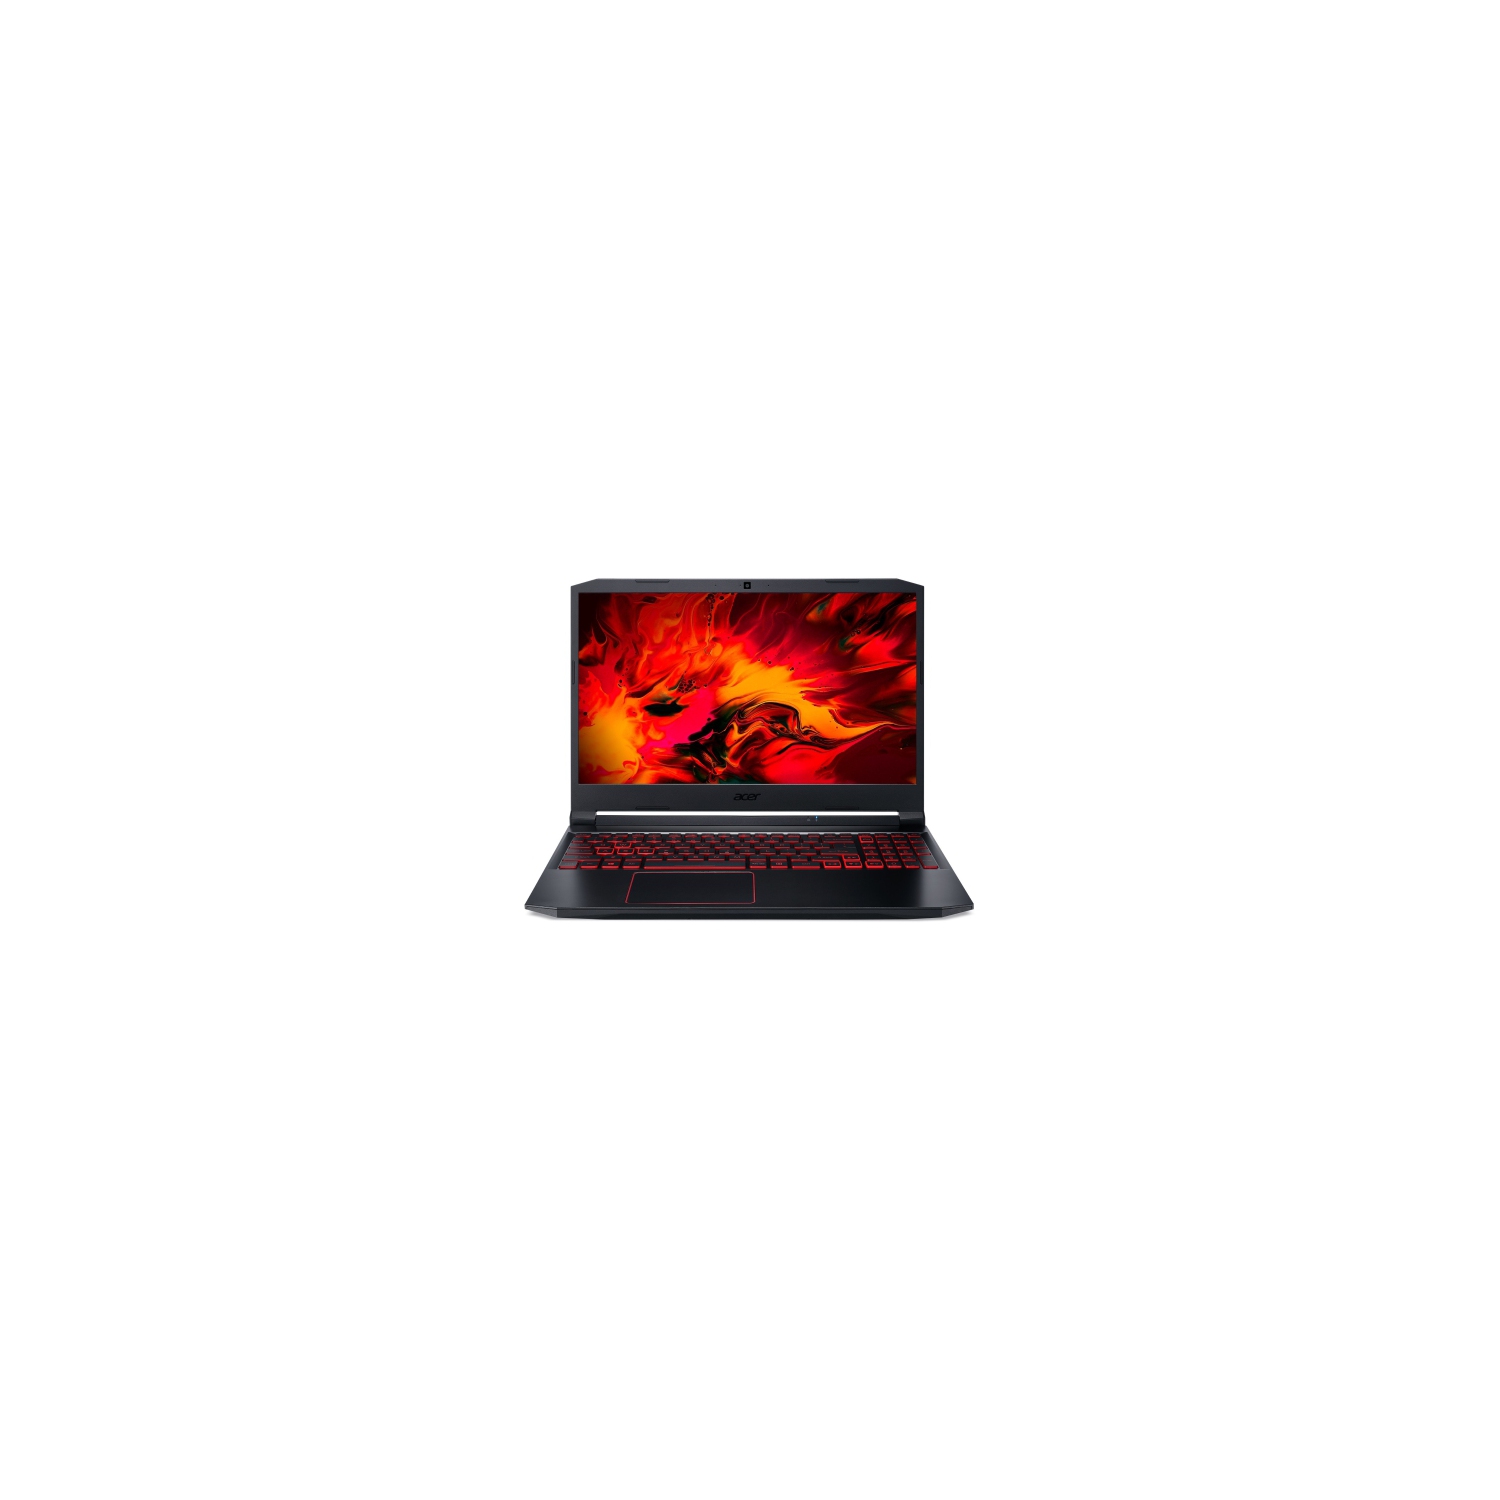 Refurbished (Good) - Acer Nitro 5 15.6" Gaming Laptop (Intel i5-10300H/512GB SSD/8GB RAM/Nvidia GTX 1650/Win11) - Black